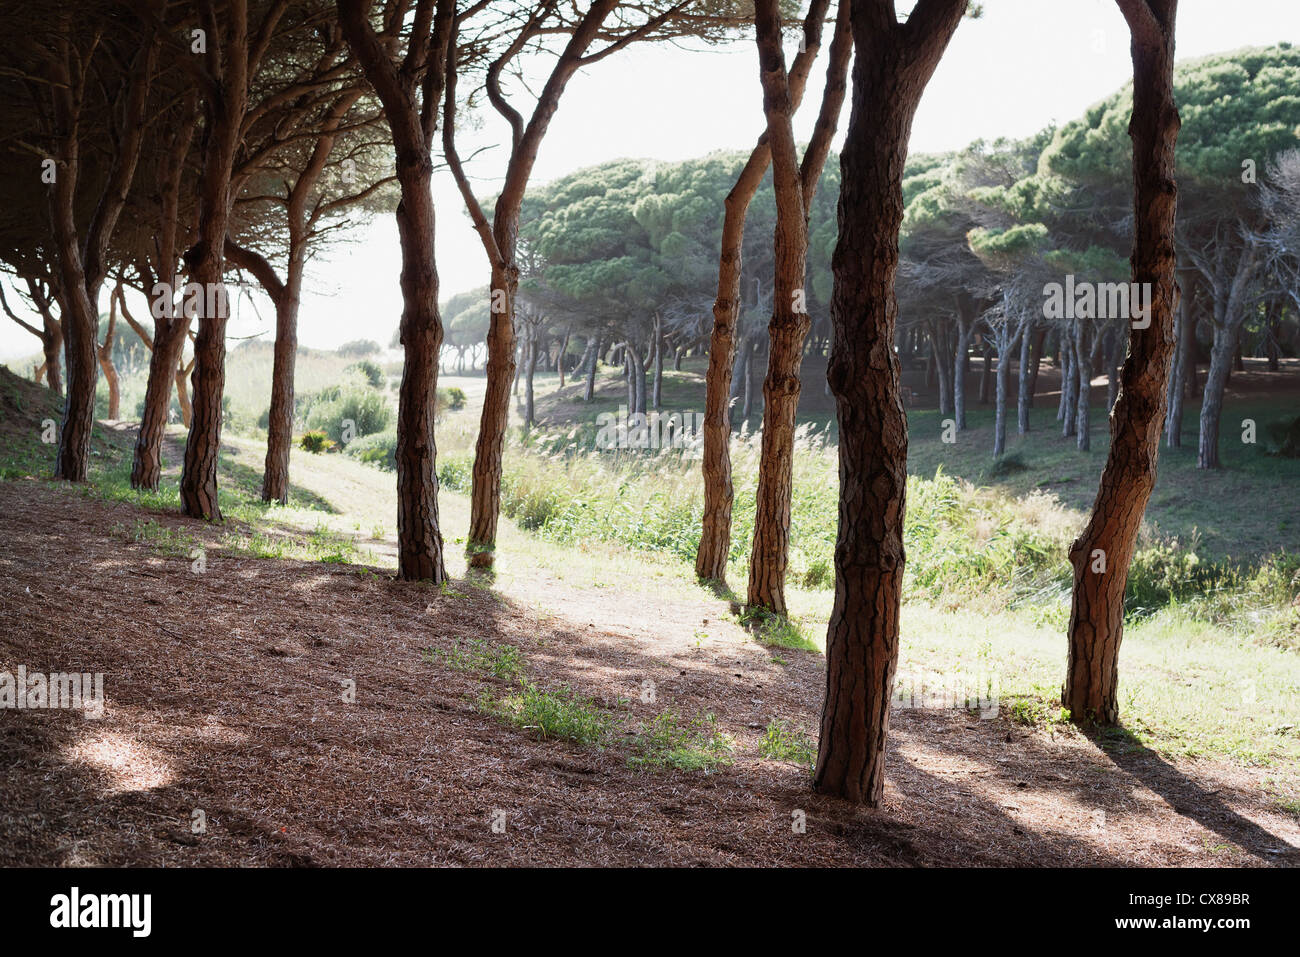 L'ombre fournie par les arbres ; Tarifa, Cadix, Andalousie, Espagne Banque D'Images